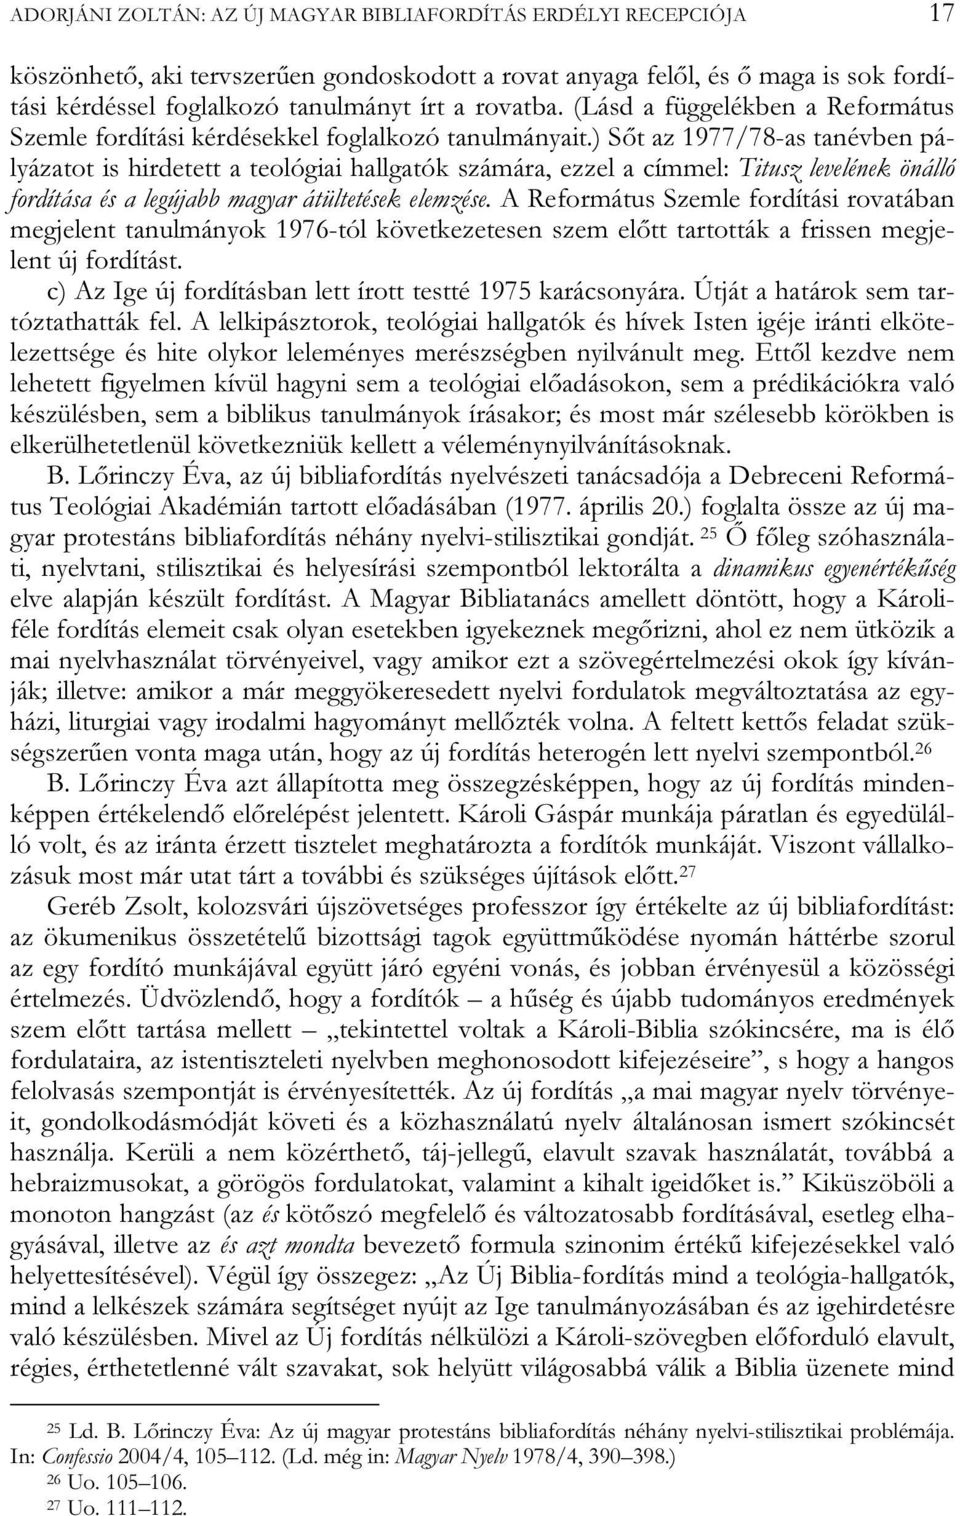 ) Sőt az 1977/78-as tanévben pályázatot is hirdetett a teológiai hallgatók számára, ezzel a címmel: Titusz levelének önálló fordítása és a legújabb magyar átültetések elemzése.